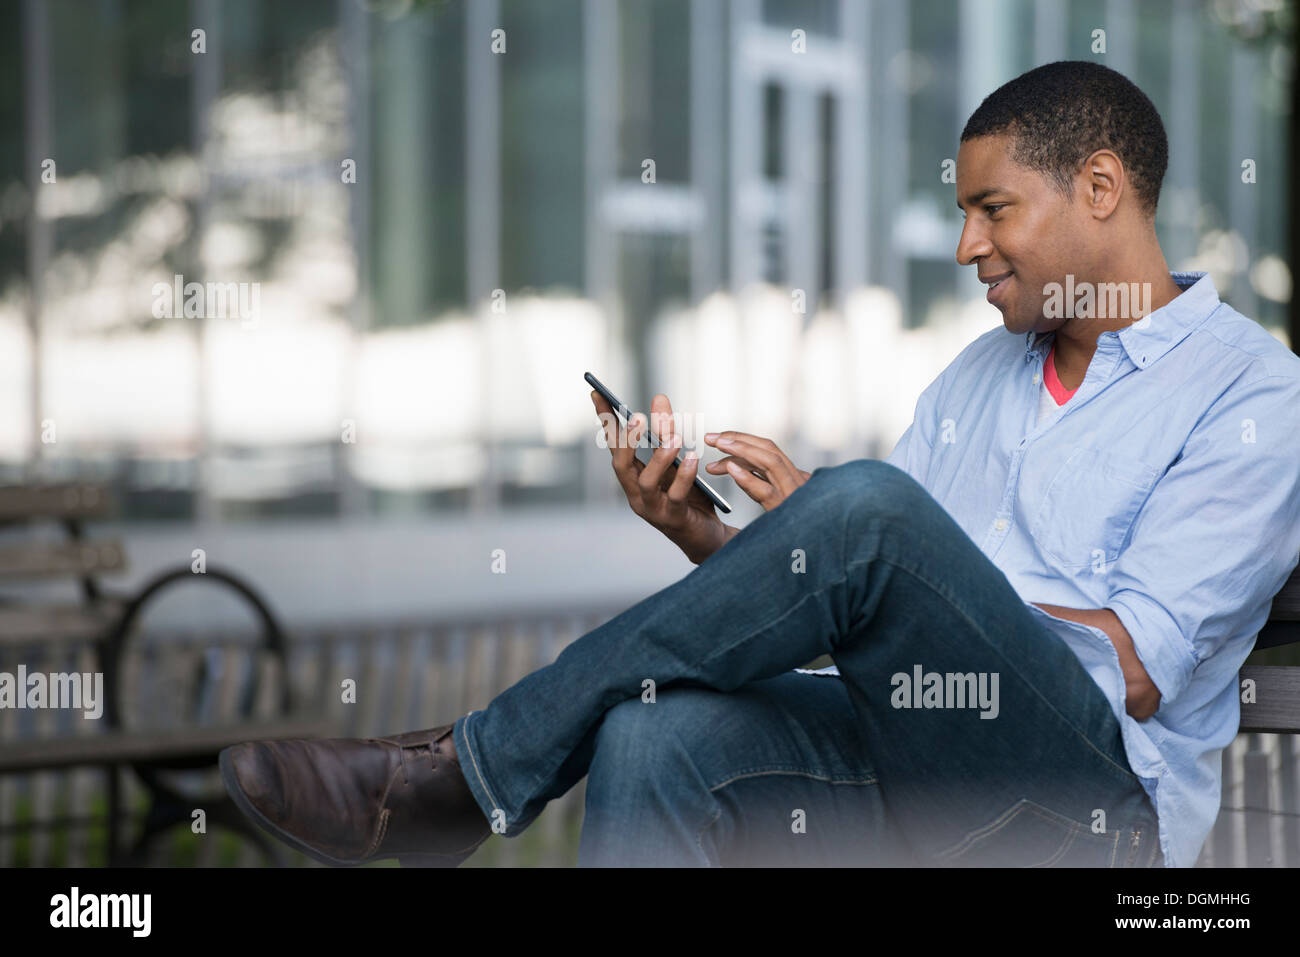 Estate in città. La gente all'esterno, mantenendo in contatto mentre si è in movimento. Un uomo seduto su una panchina utilizzando una tavoletta digitale. Foto Stock